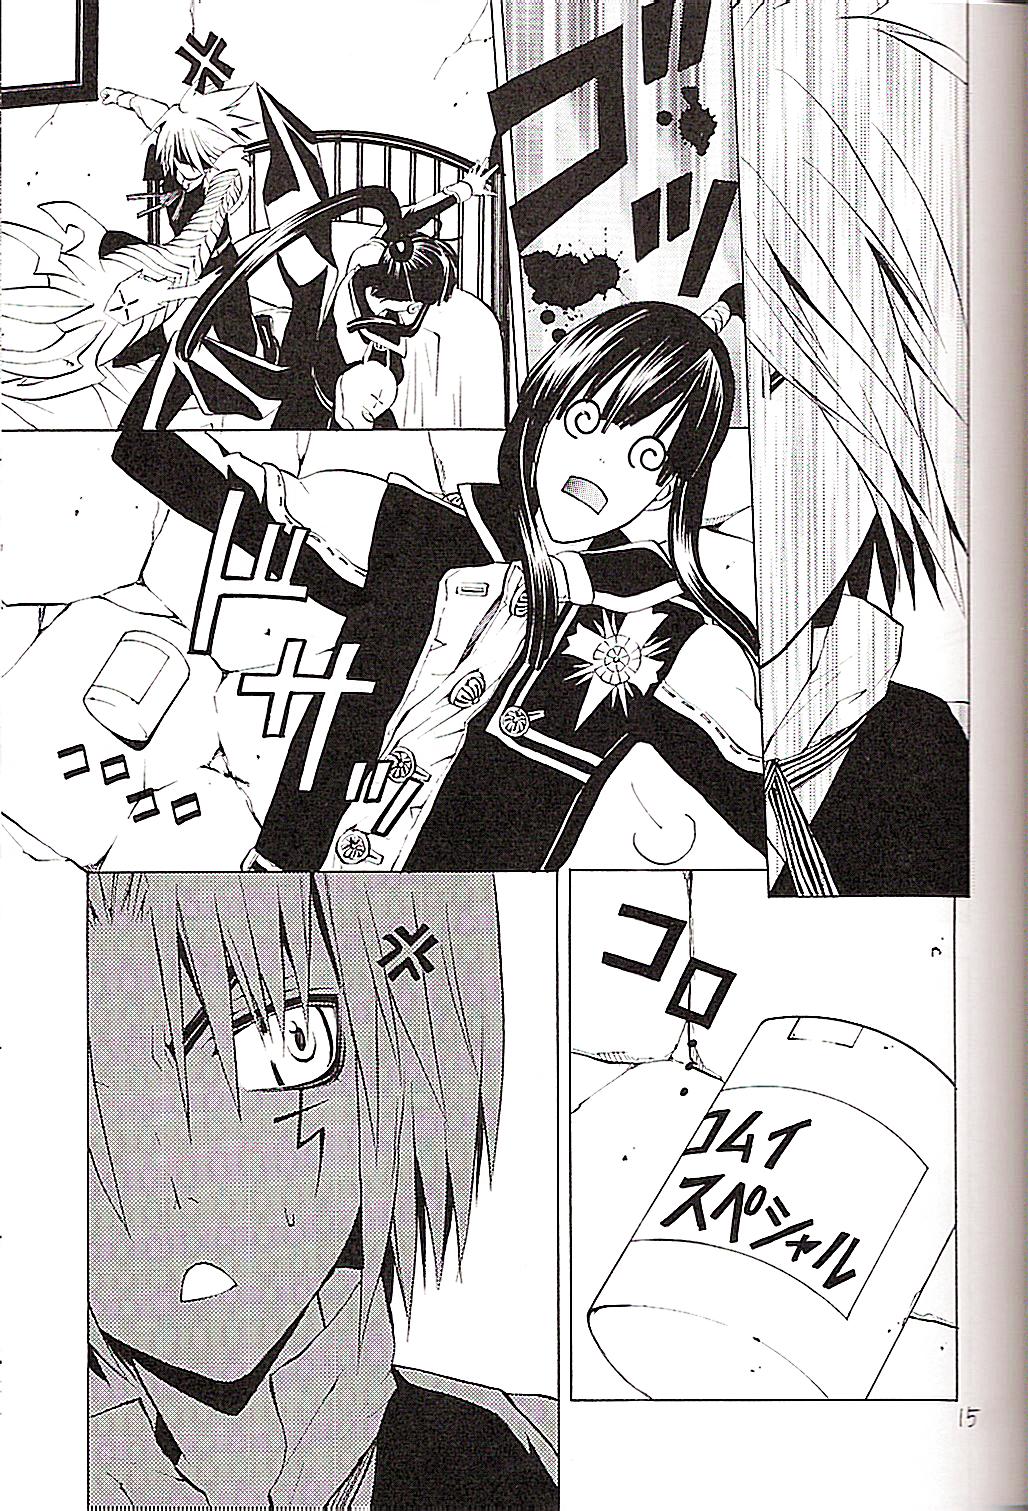 (Mimiket 12) [A.A.O (Shinohara Hana)] CRUSADER (D.Gray-man) page 15 full